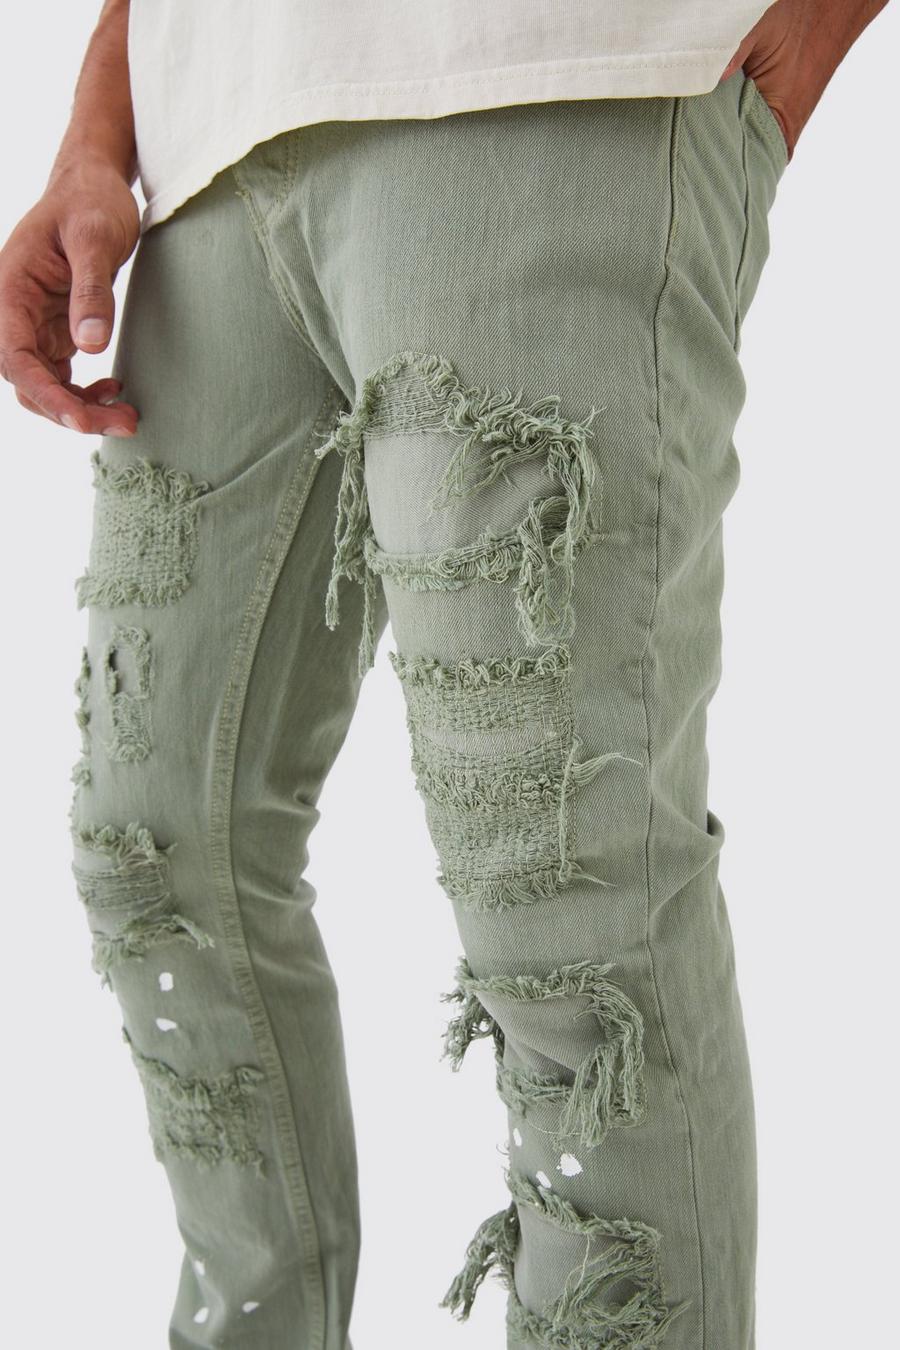 Jeans Slim Fit in denim rigido candeggiati con strappi & rattoppi, Sage